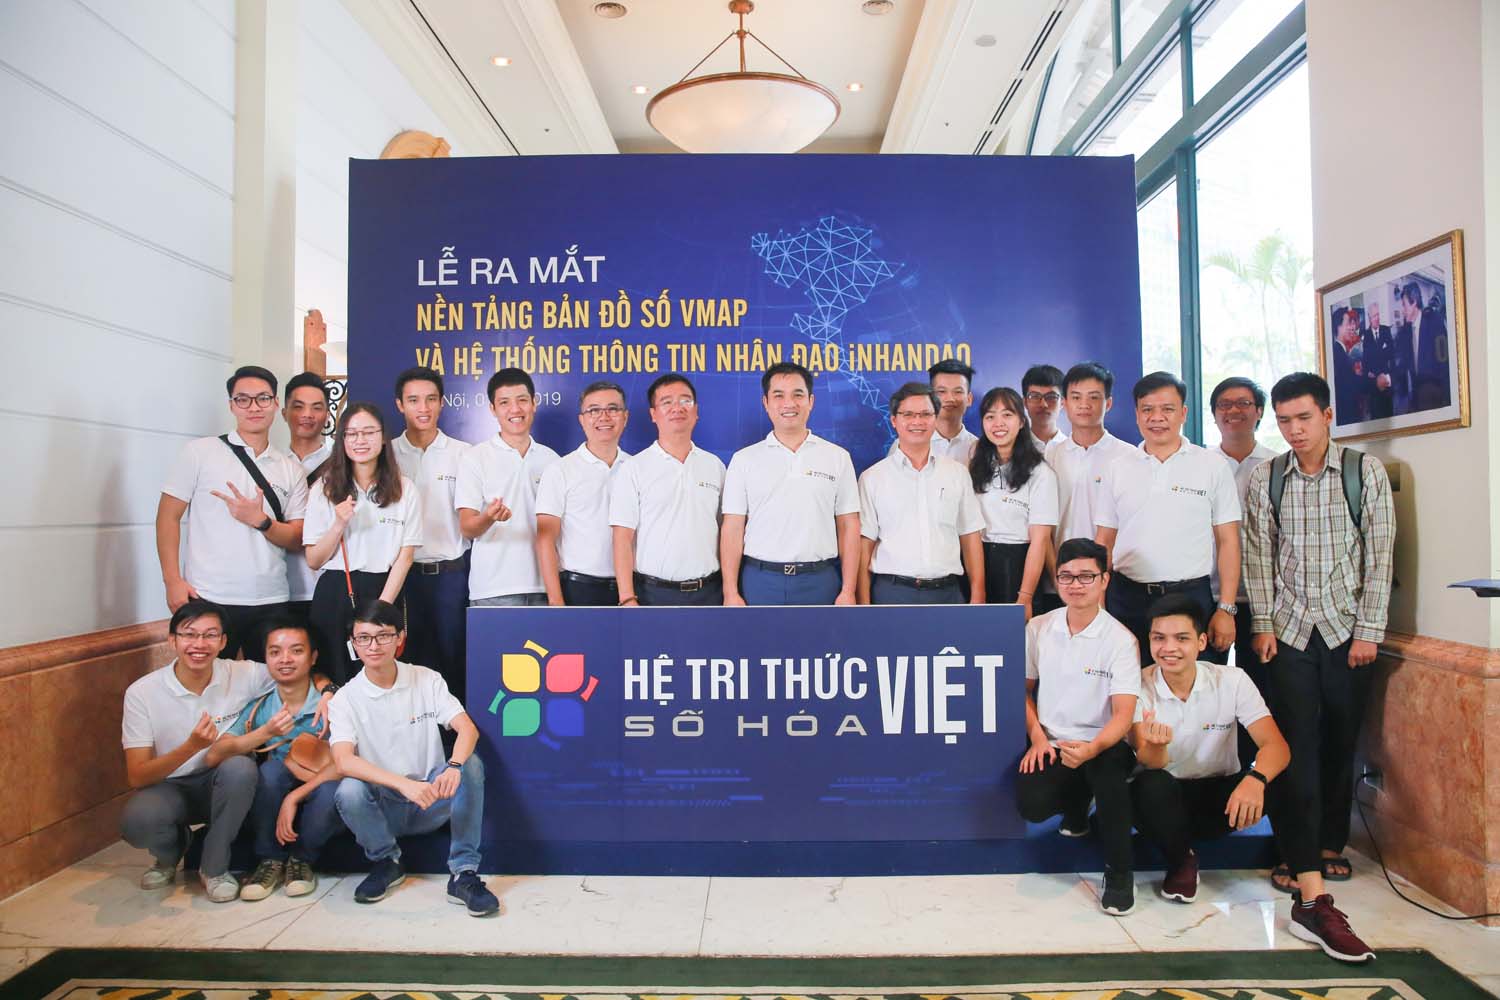 Phó Giám đốc Phạm Bảo Sơn, Trưởng ban Khoa học và Công nghệ Vũ Văn Tích cùng các nhà khoa học đến từ Trường ĐH Công nghệ tham gia xây dựng và phát triển Vmap